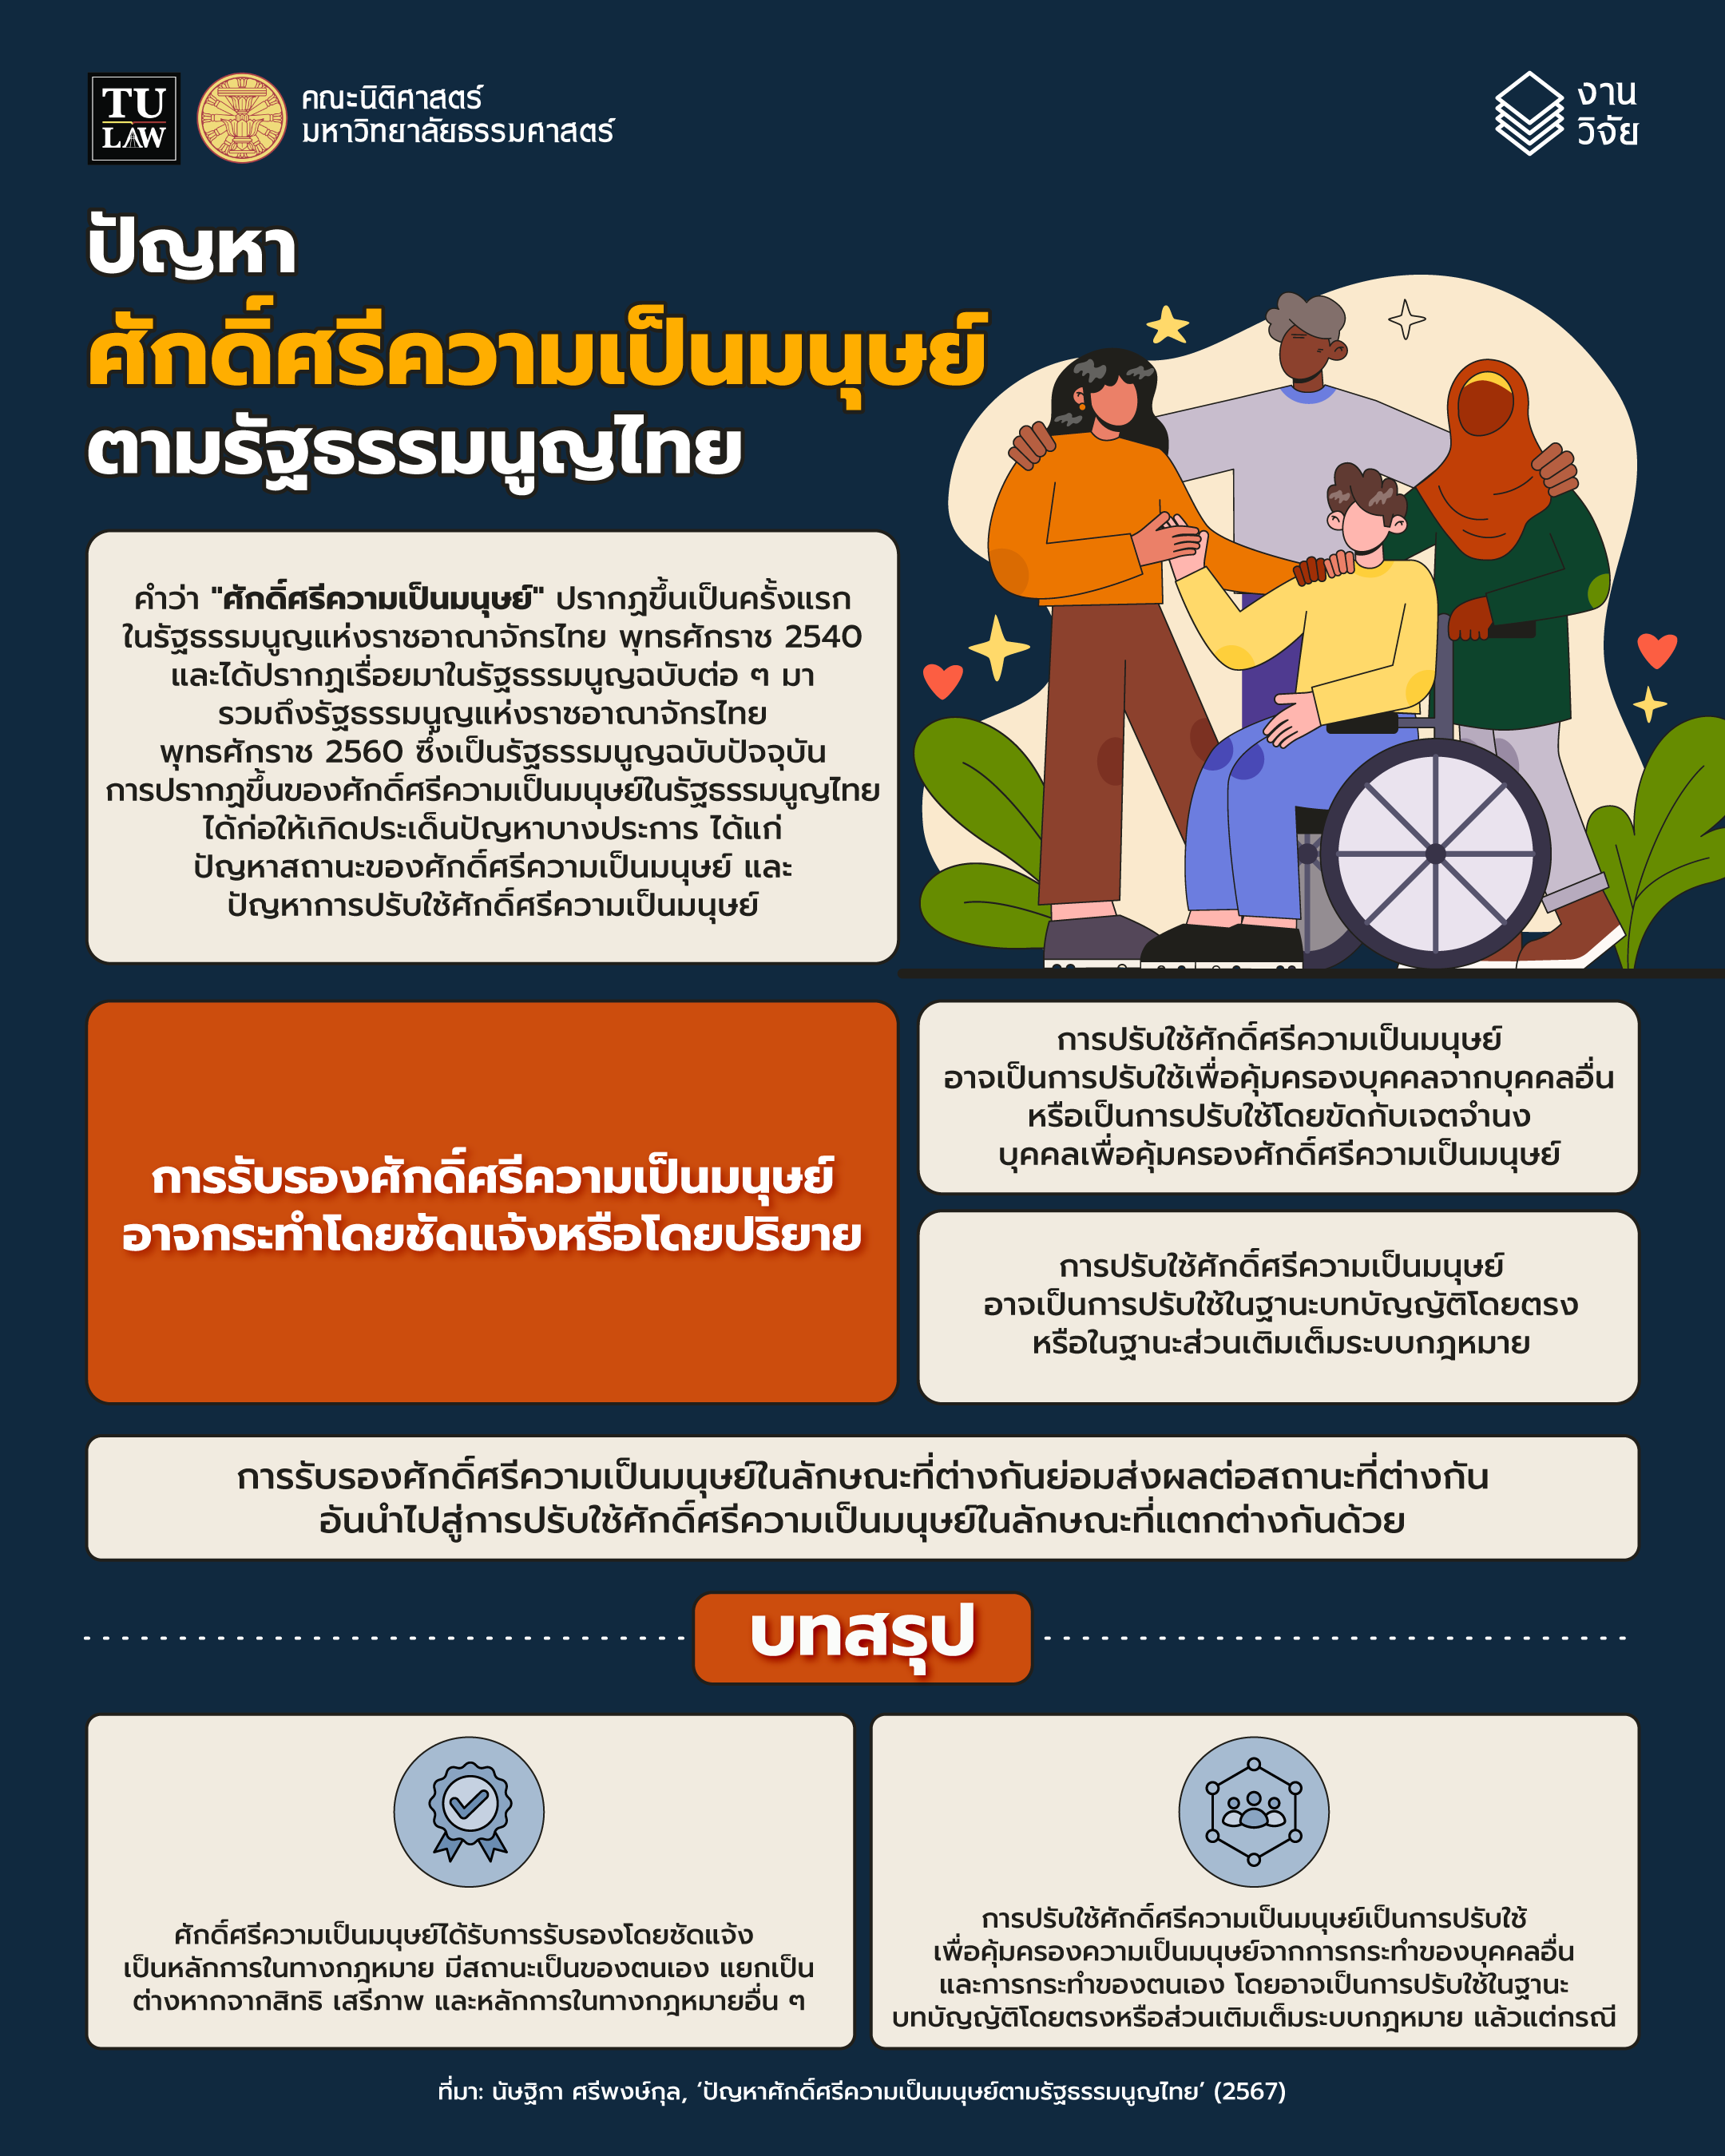 ความรู้ทางกฎหมายหลากหลายและเข้าใจง่าย ชุดที่ 69 :  “ปัญหาศักดิ์ศรีความเป็นมนุษย์ตามรัฐธรรมนูญไทย”